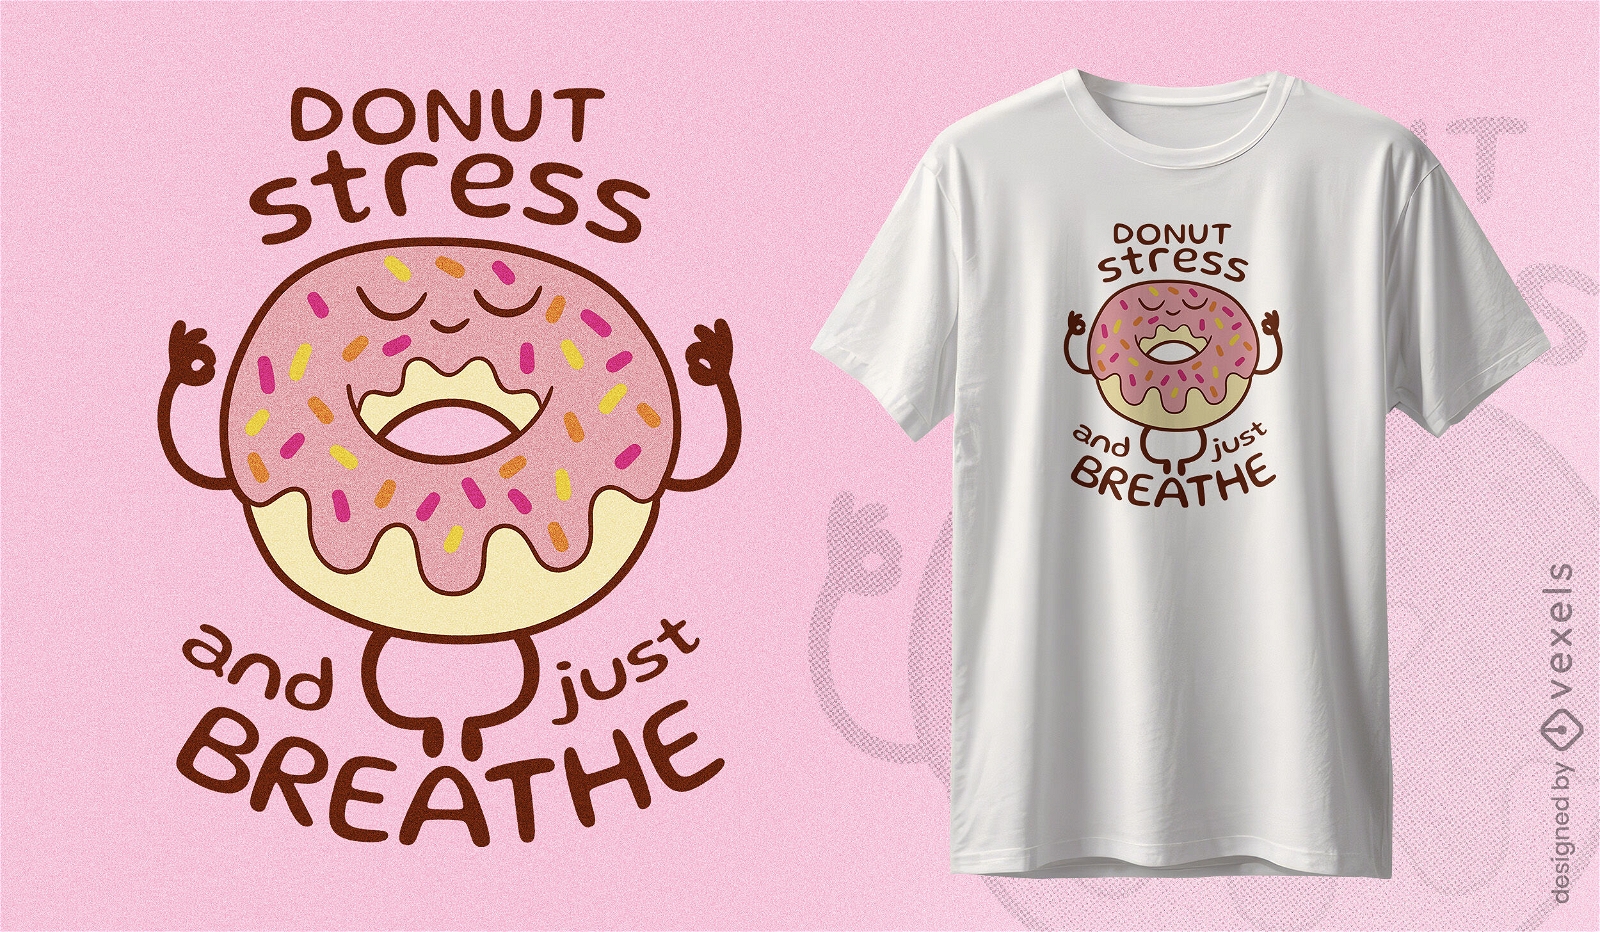 Diseño de camiseta para aliviar el estrés con donut de yoga.